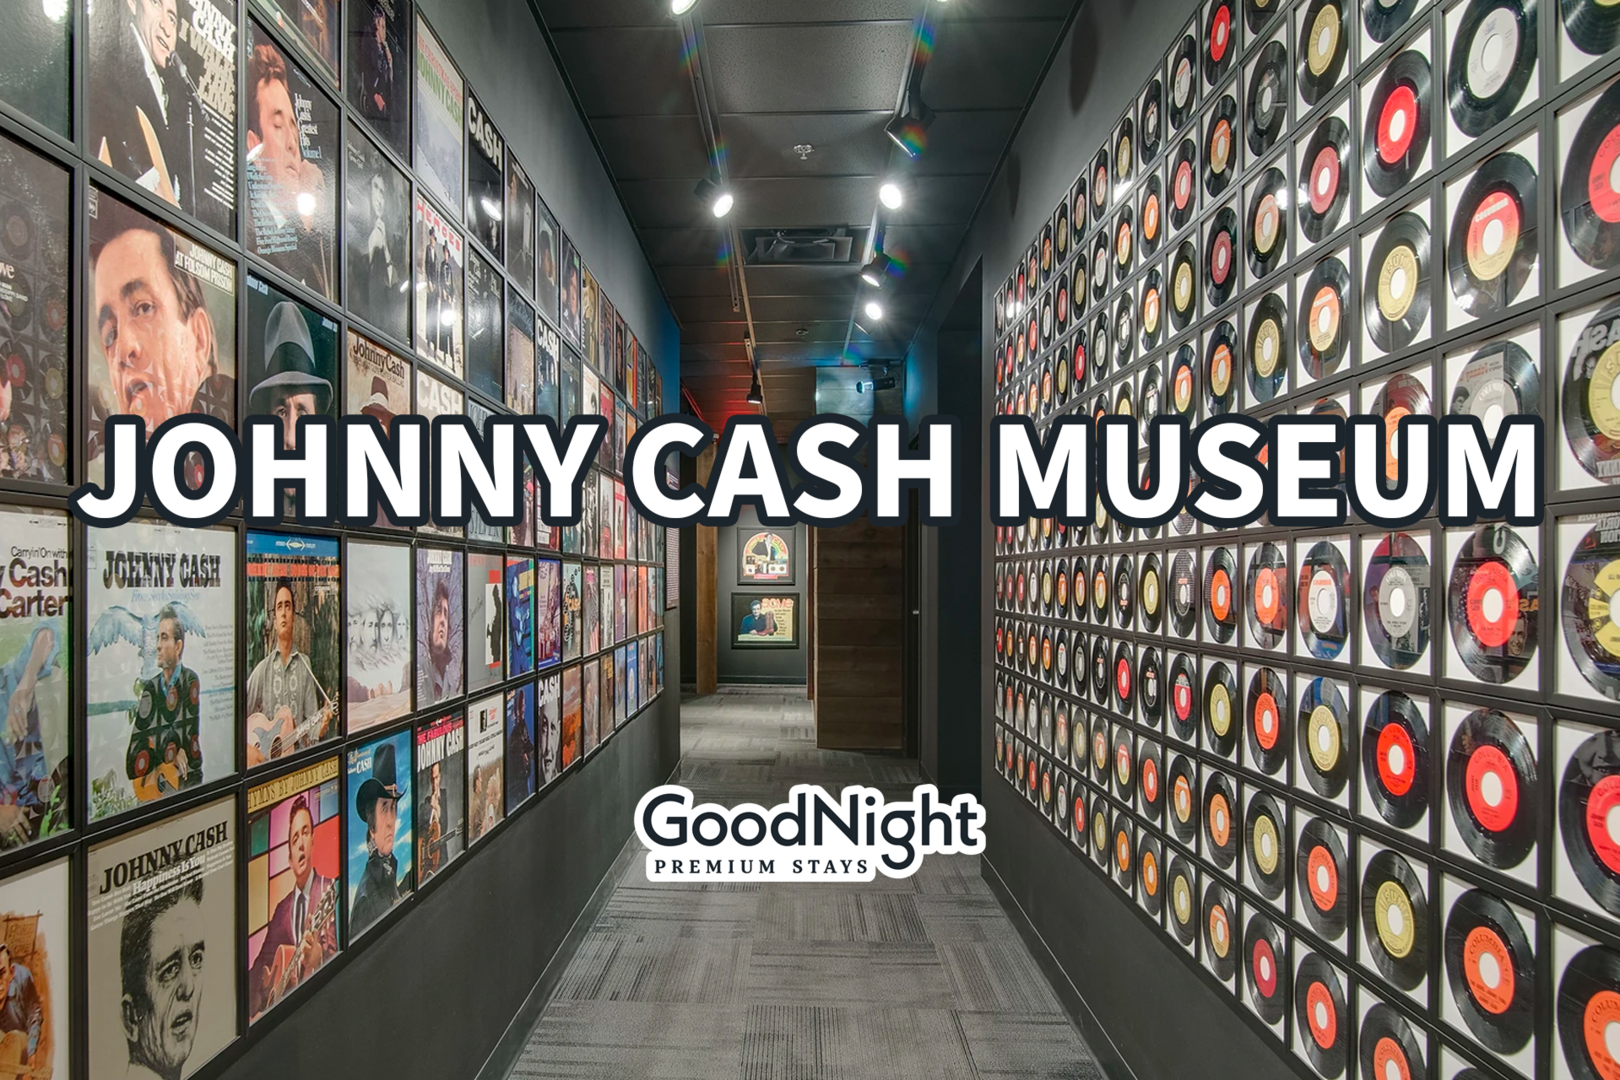 4 mins: Johnny Cash Museum